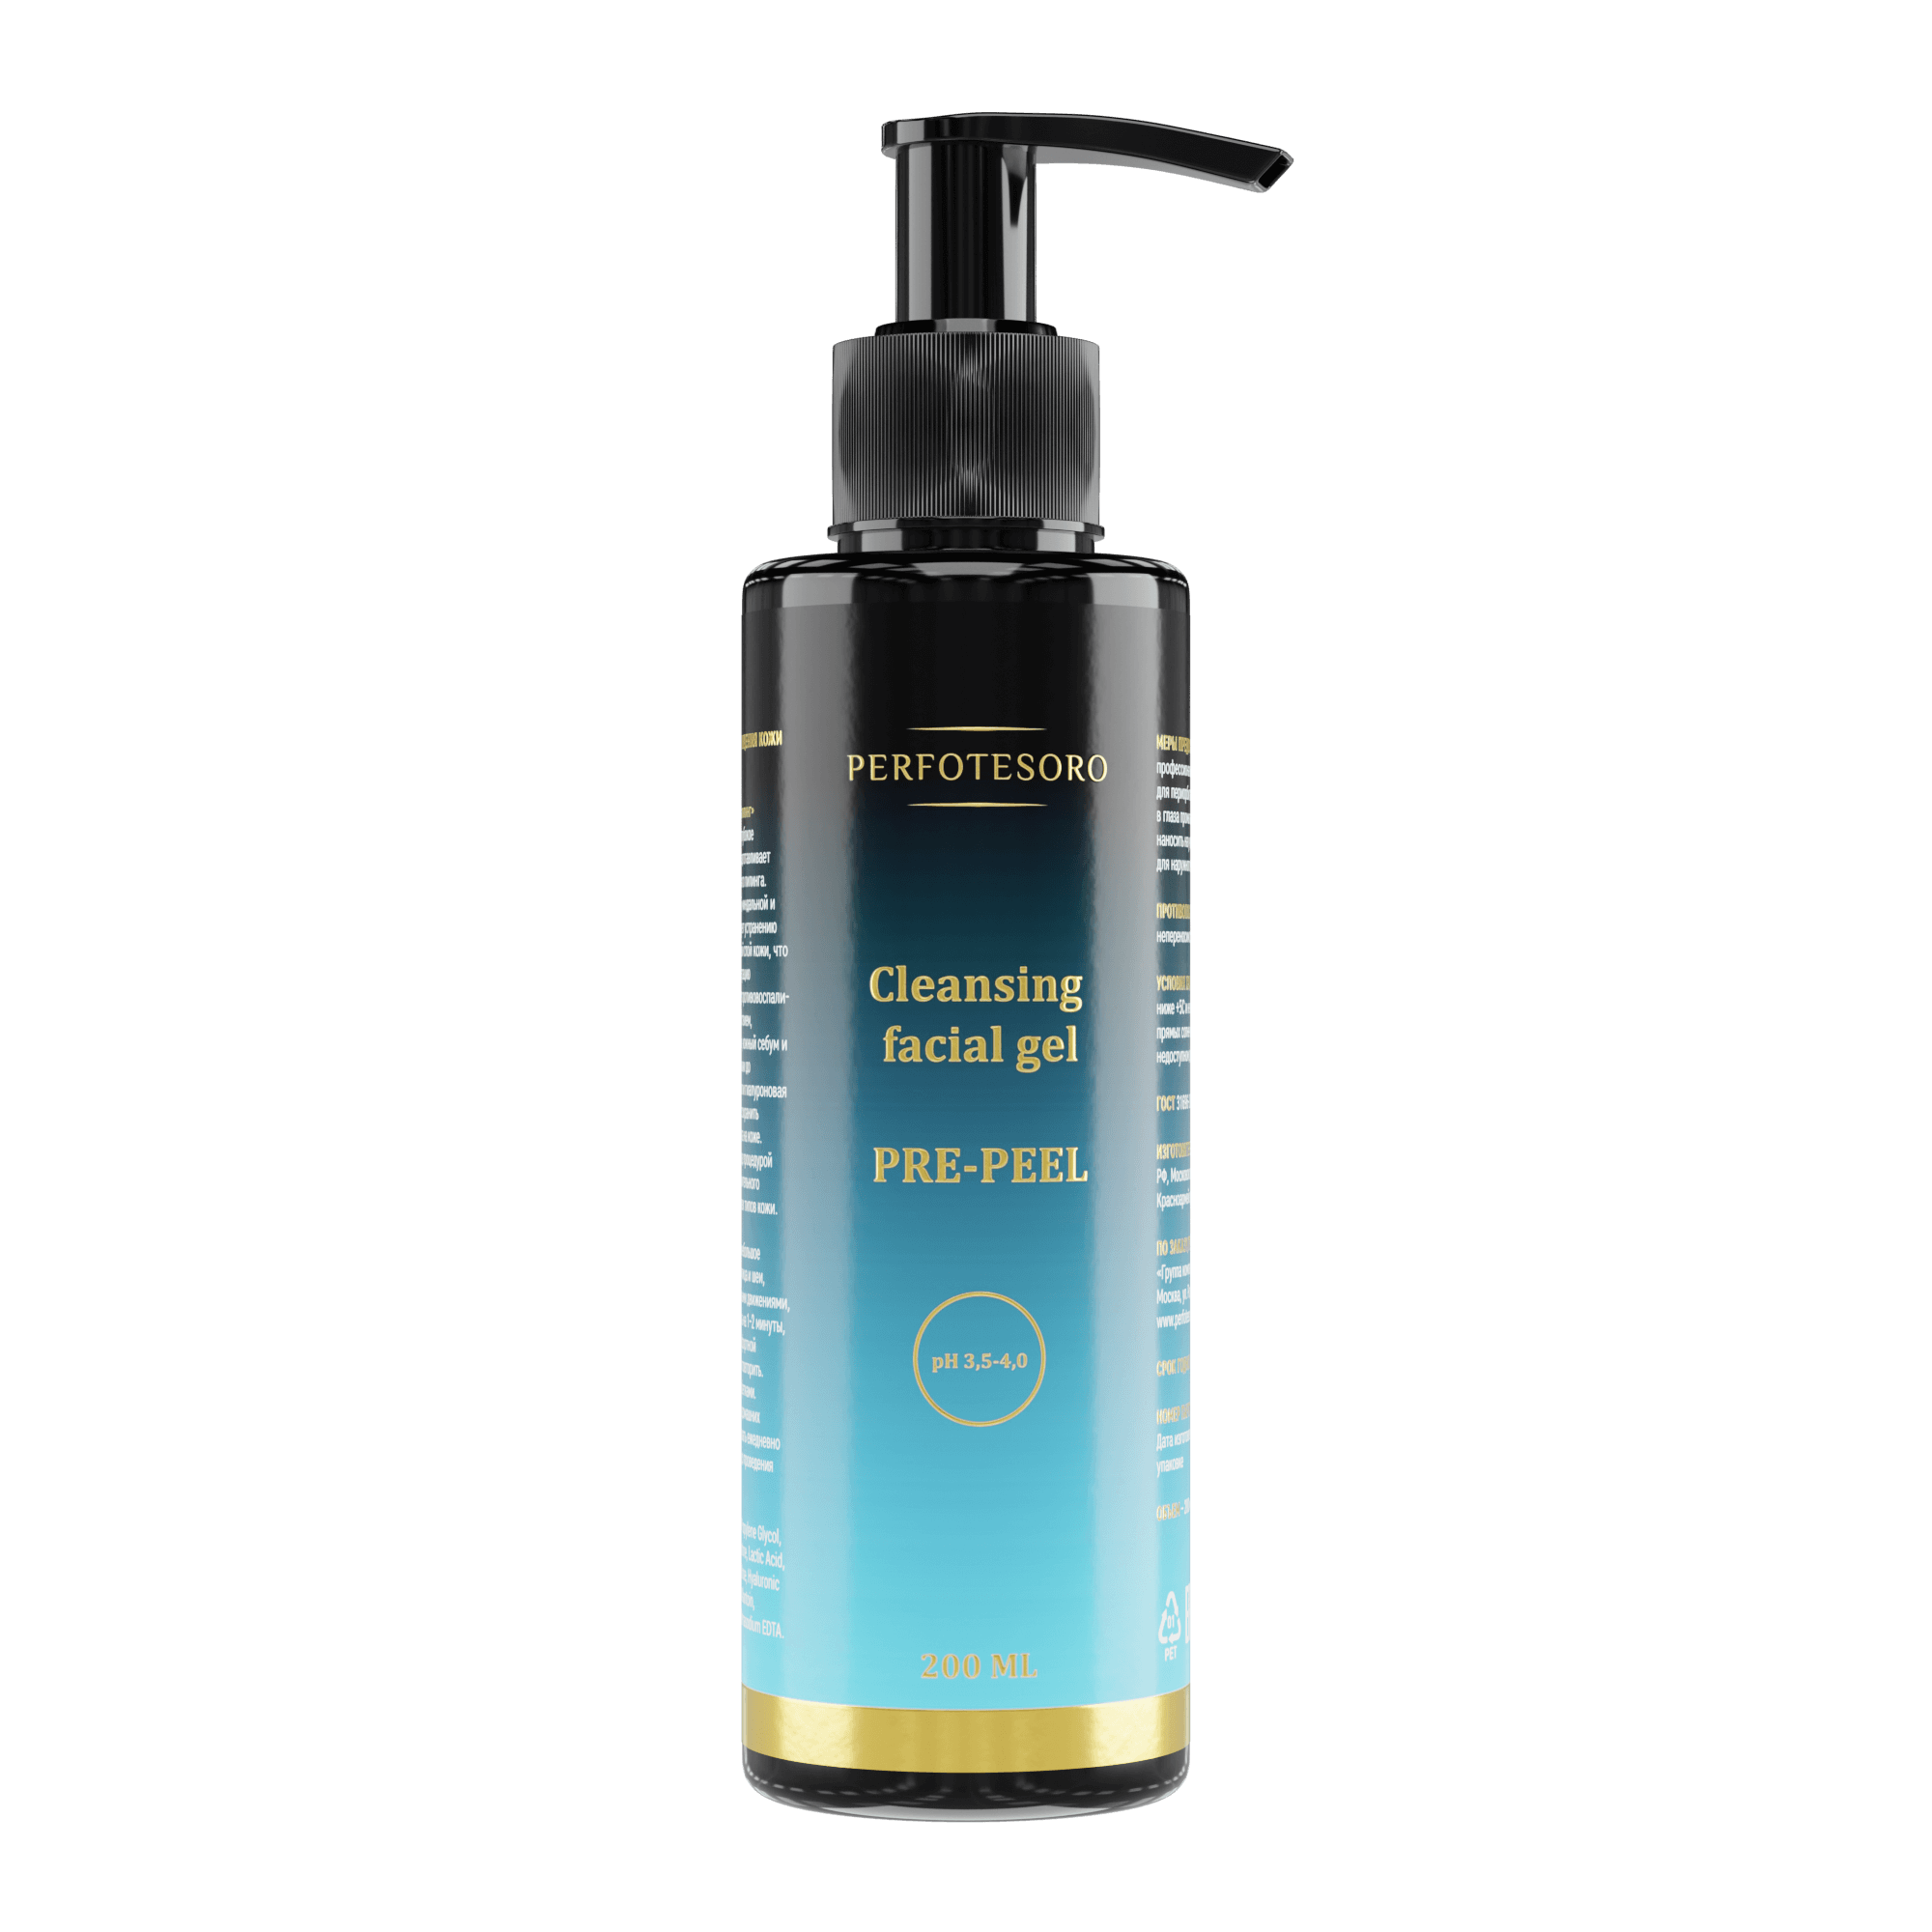 Предпилинговый гель для очищения кожи - Cleansing facial gel PRE-PEEL